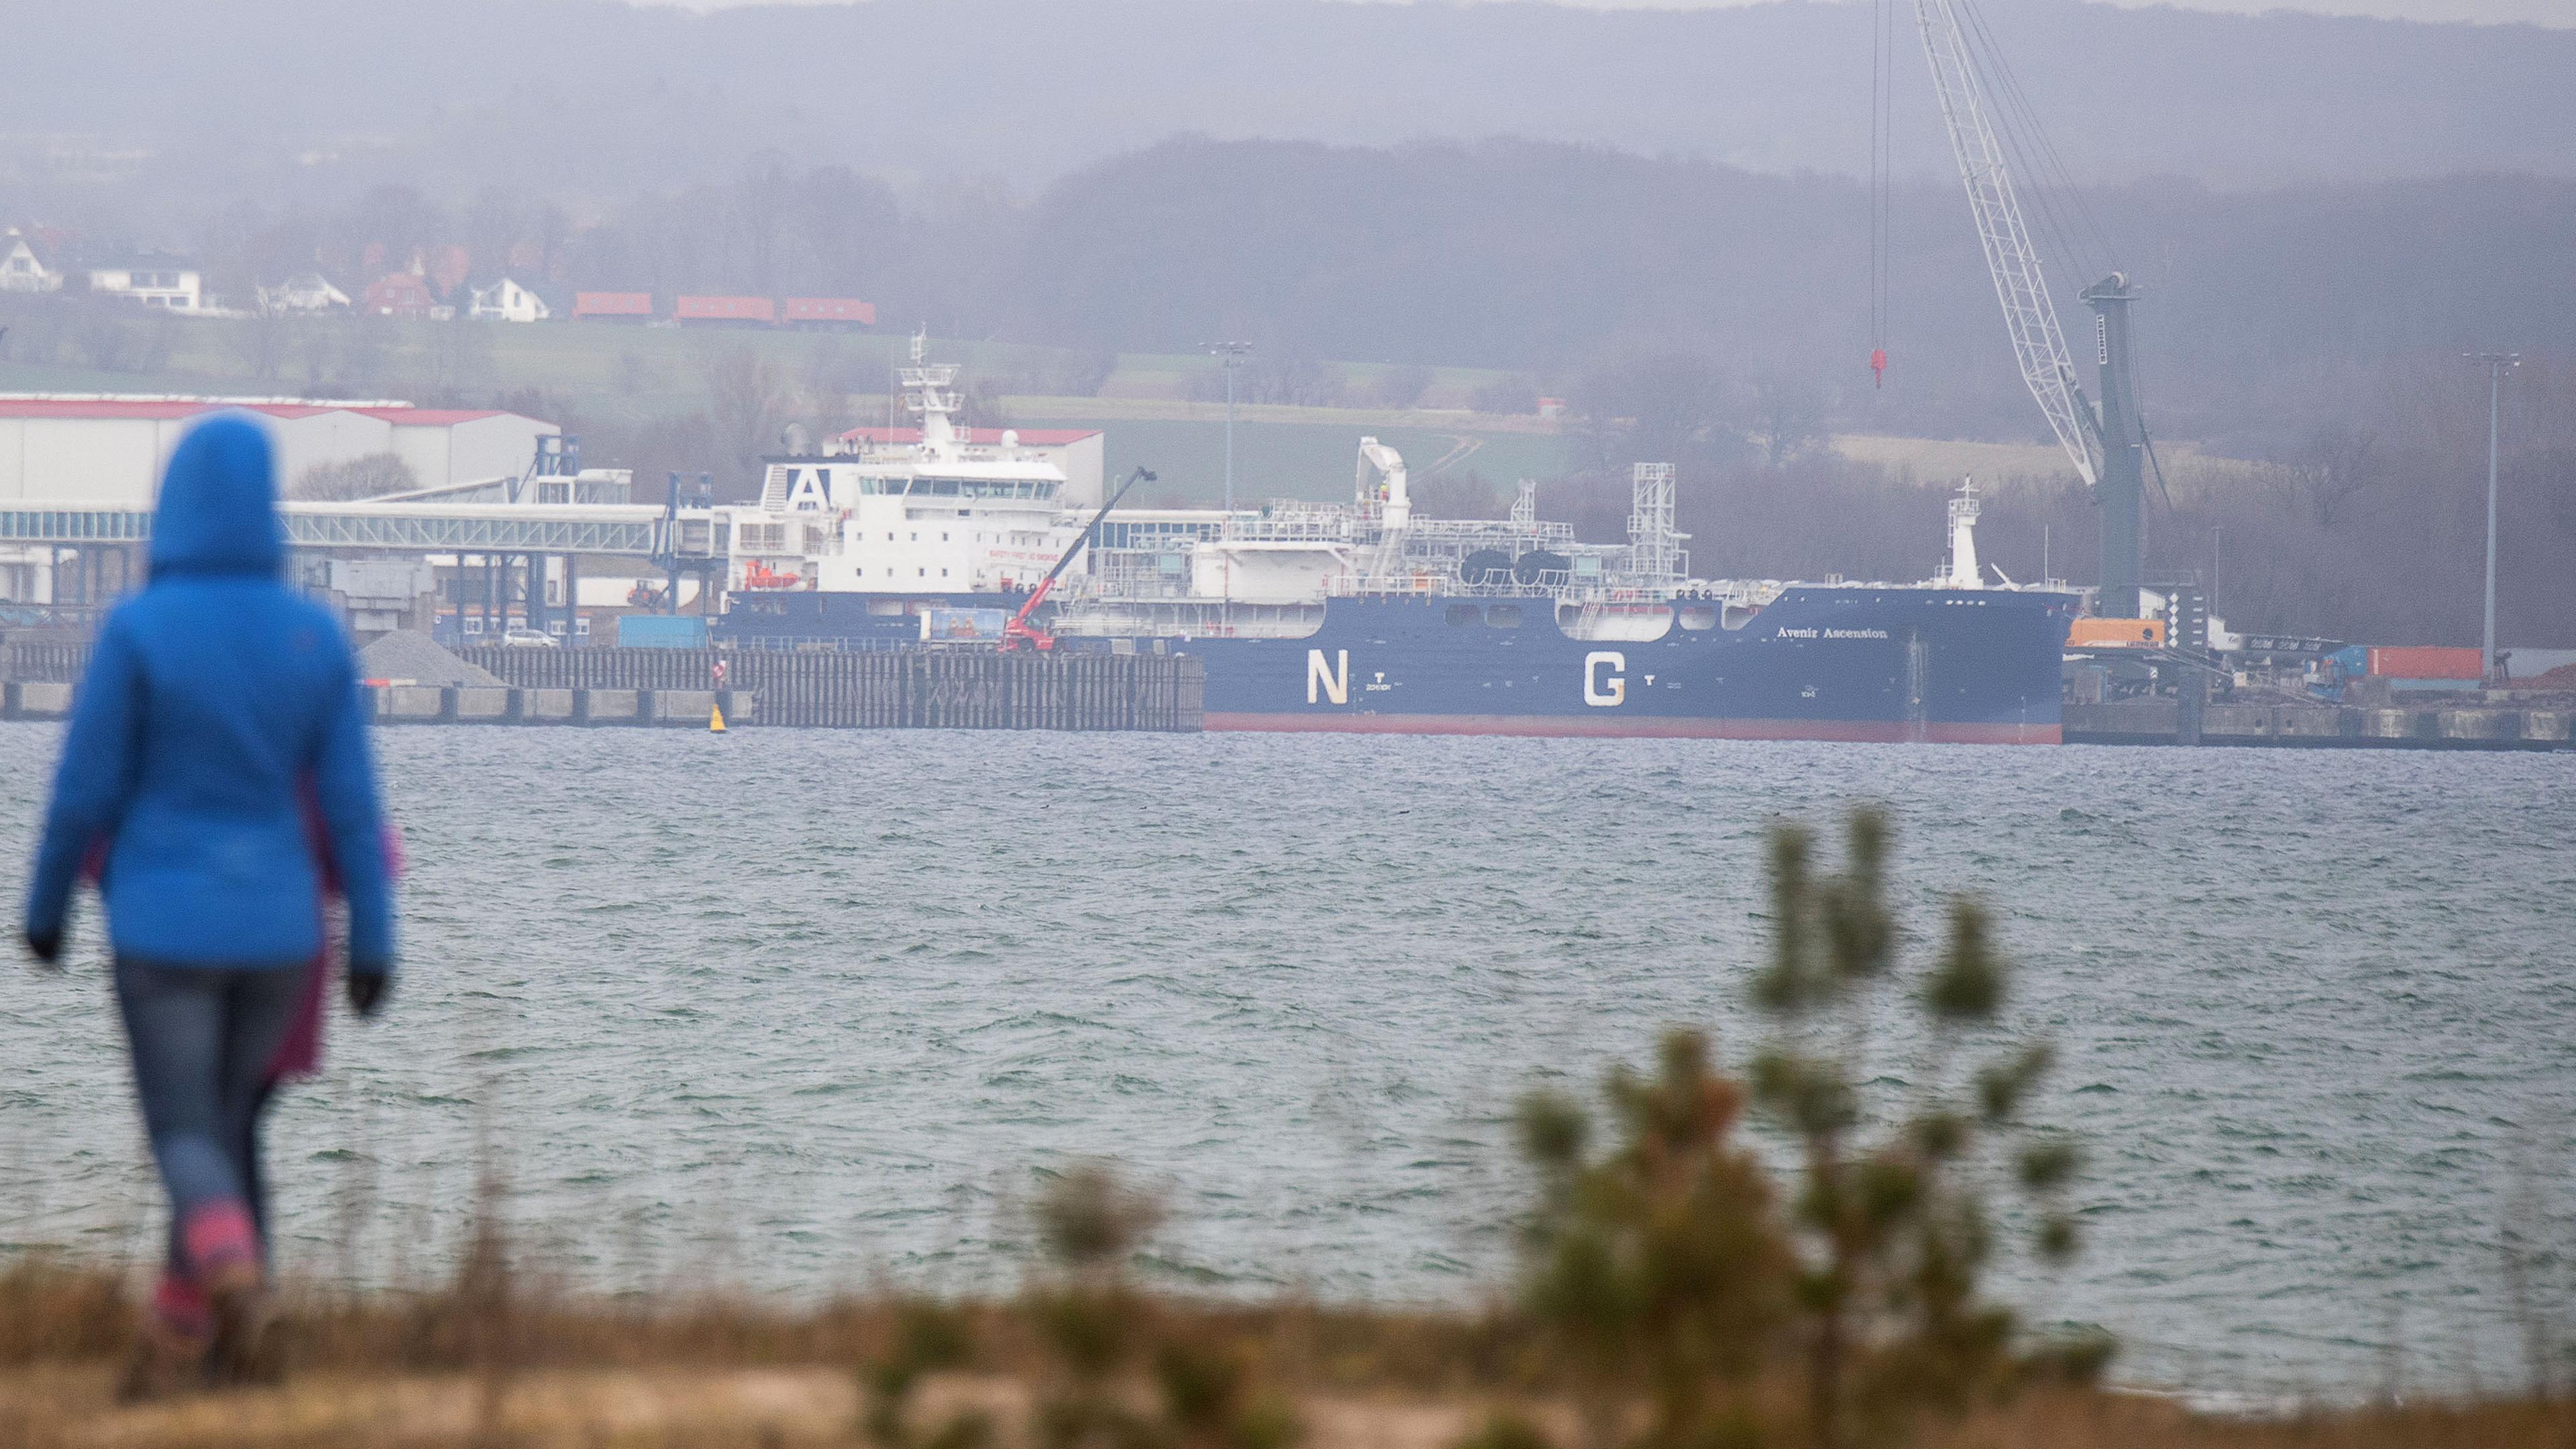 Der LNG-Tanker "Avenir Ascension" im Hafen von Mukran in der Gemeinde Sassnitz auf der Insel Rügen.